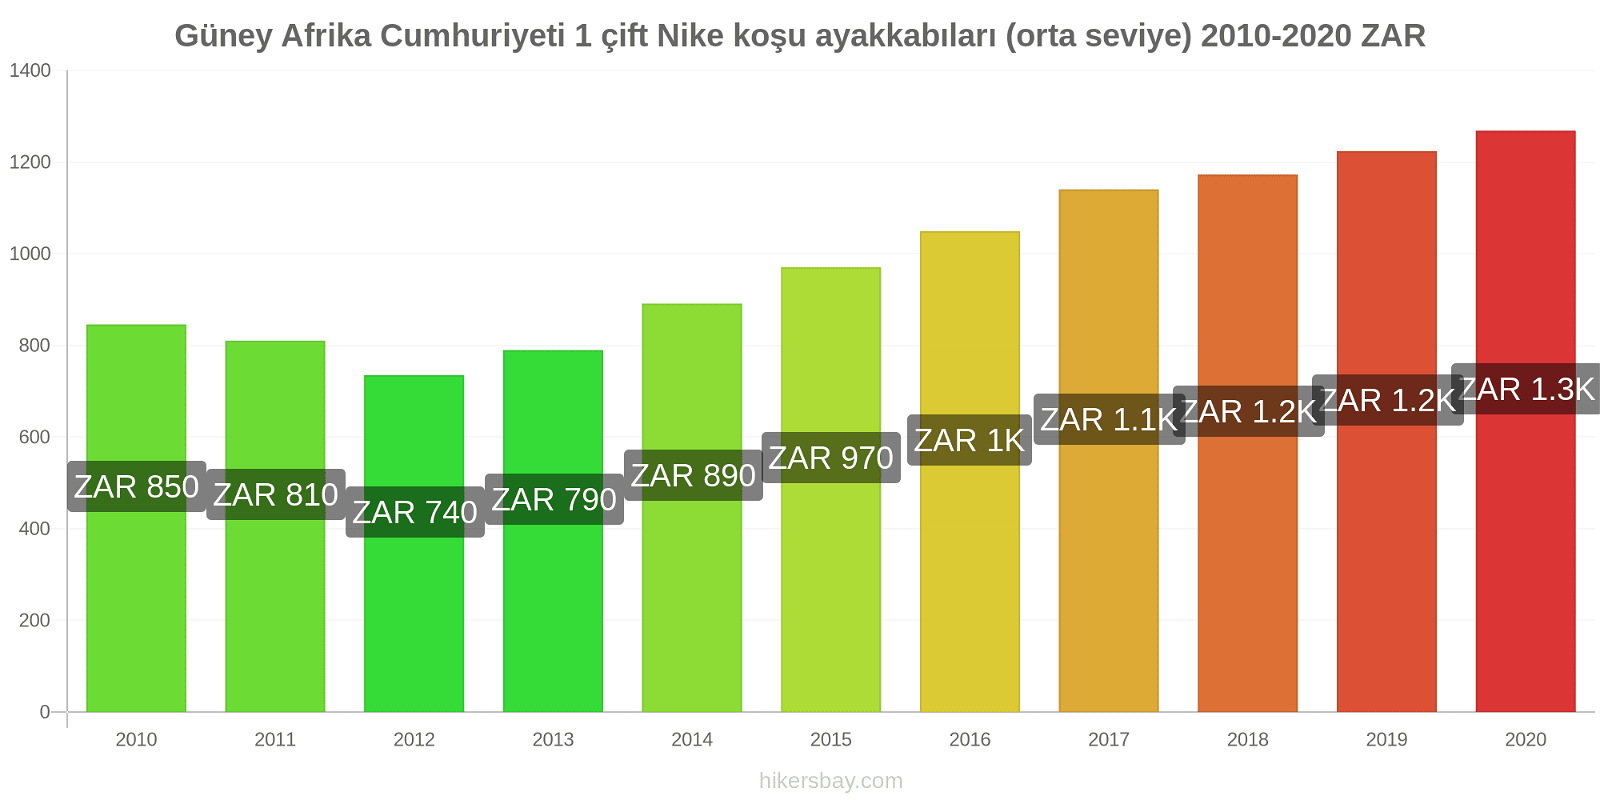 Güney Afrika Cumhuriyeti fiyat değişiklikleri 1 çift Nike koşu ayakkabıları (orta seviye) hikersbay.com